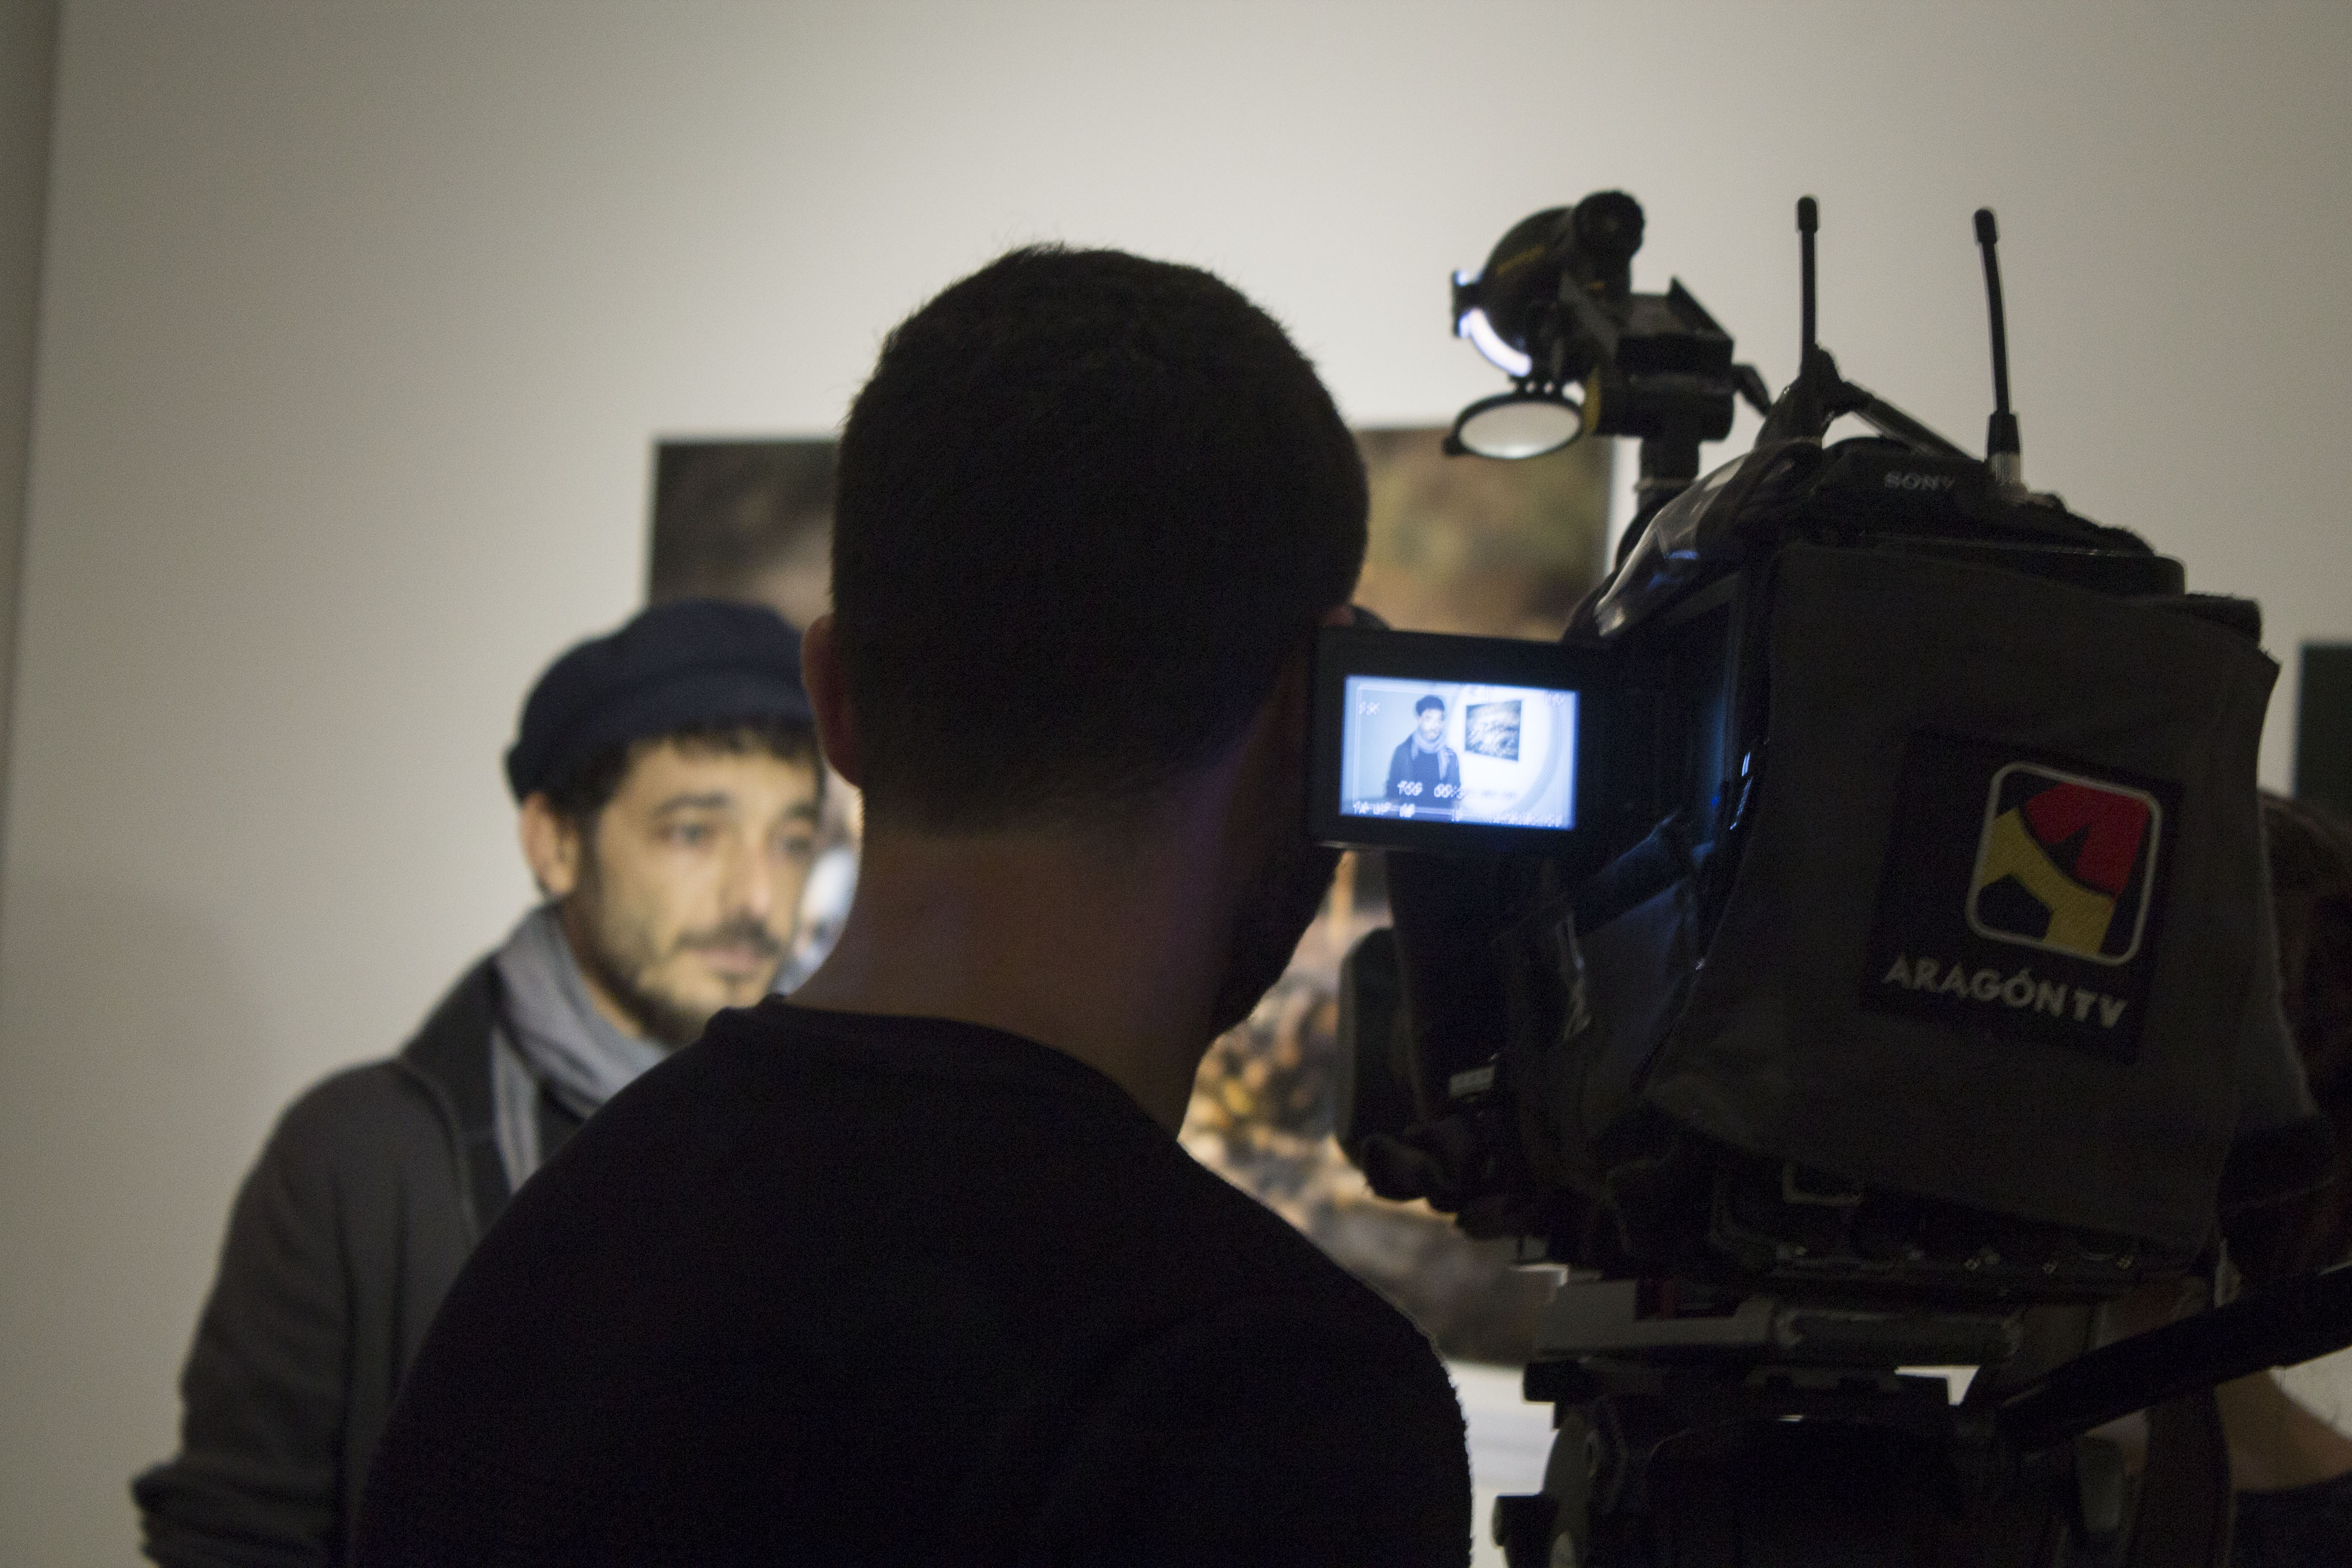 Entrevista de la televisión al fotoperiodista y miembro de MeMo, Diego Ibarra